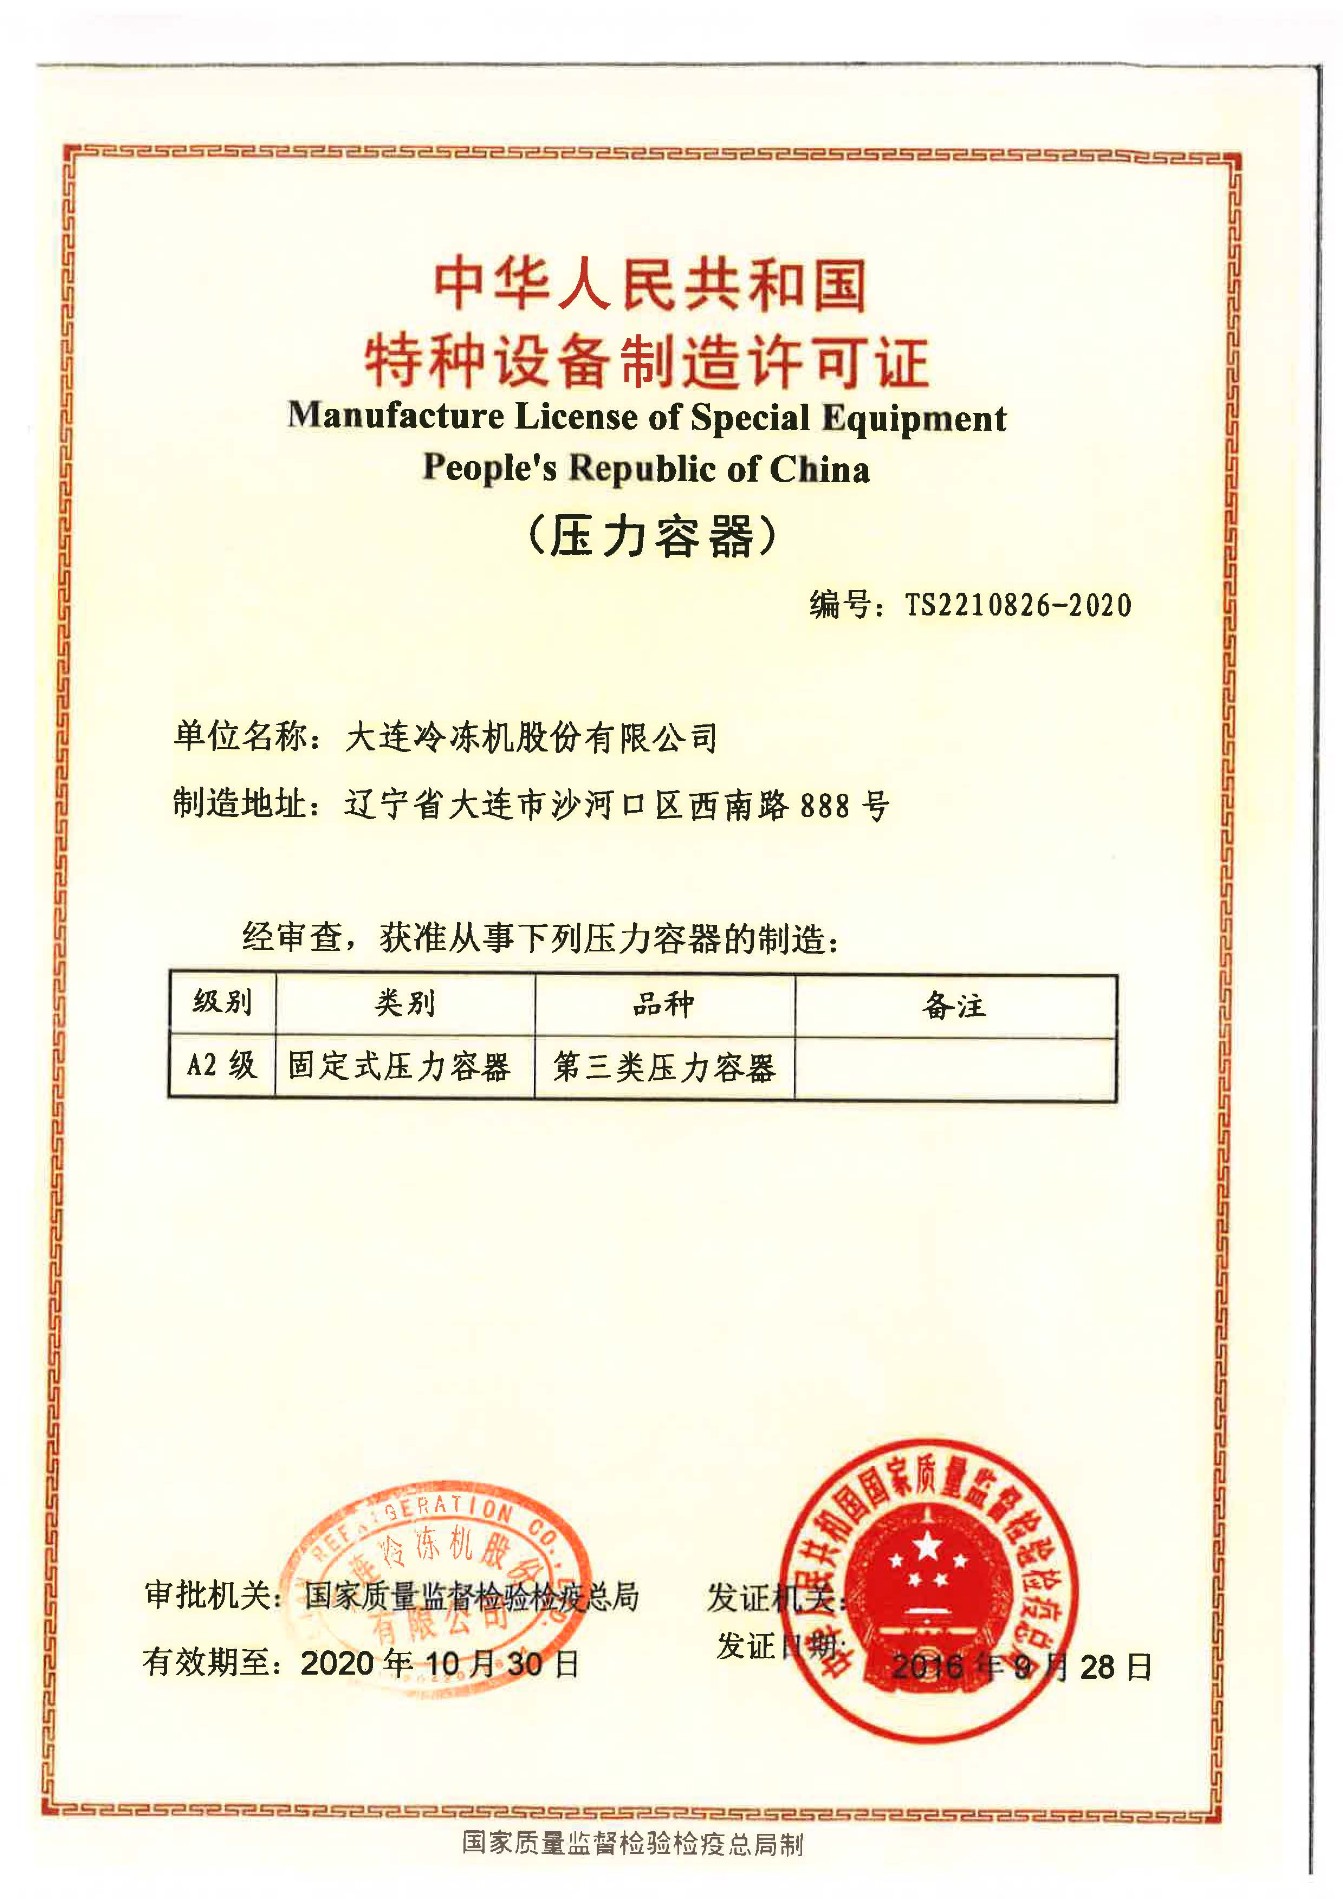 Licencia fabricación de equipos especiales Popular de la República de China